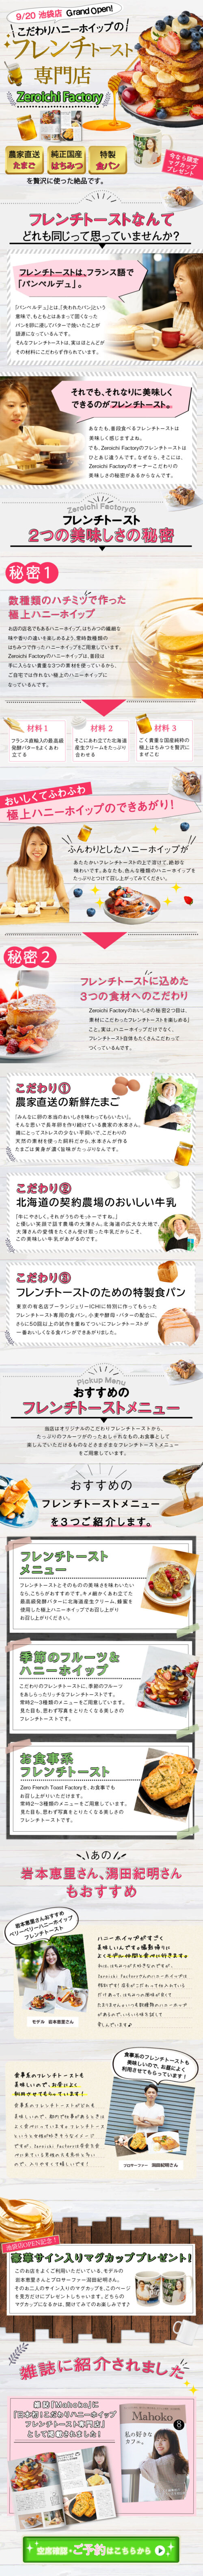 フレンチトースト専門店 ランディングページ | yusuke.design